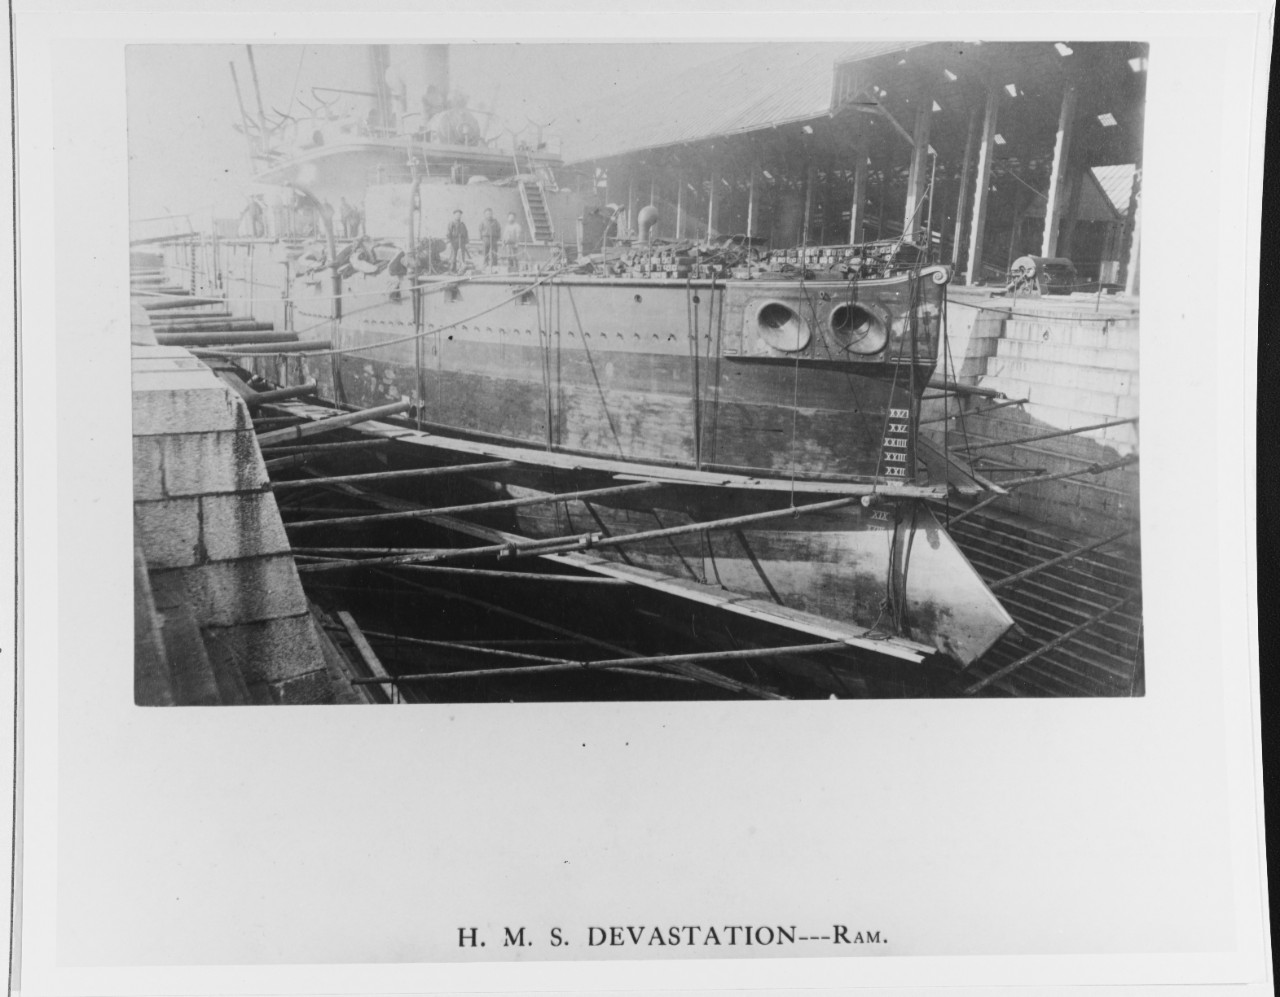 HMS DEVASTATION (British Battleship, 1871)